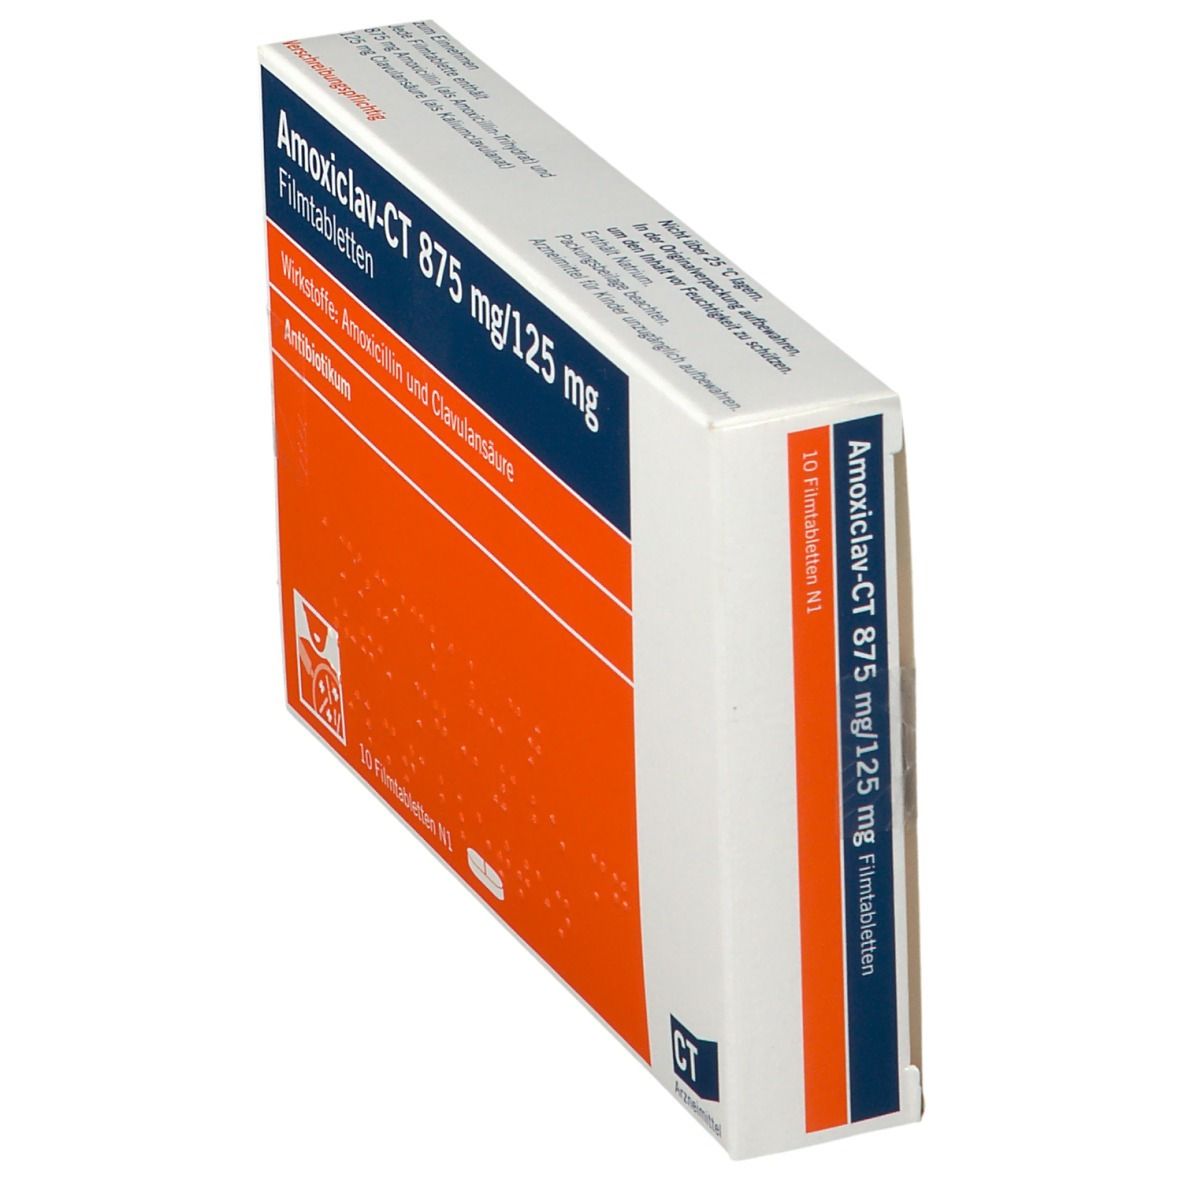 Amoxiclav-CT 875 mg/125 mg